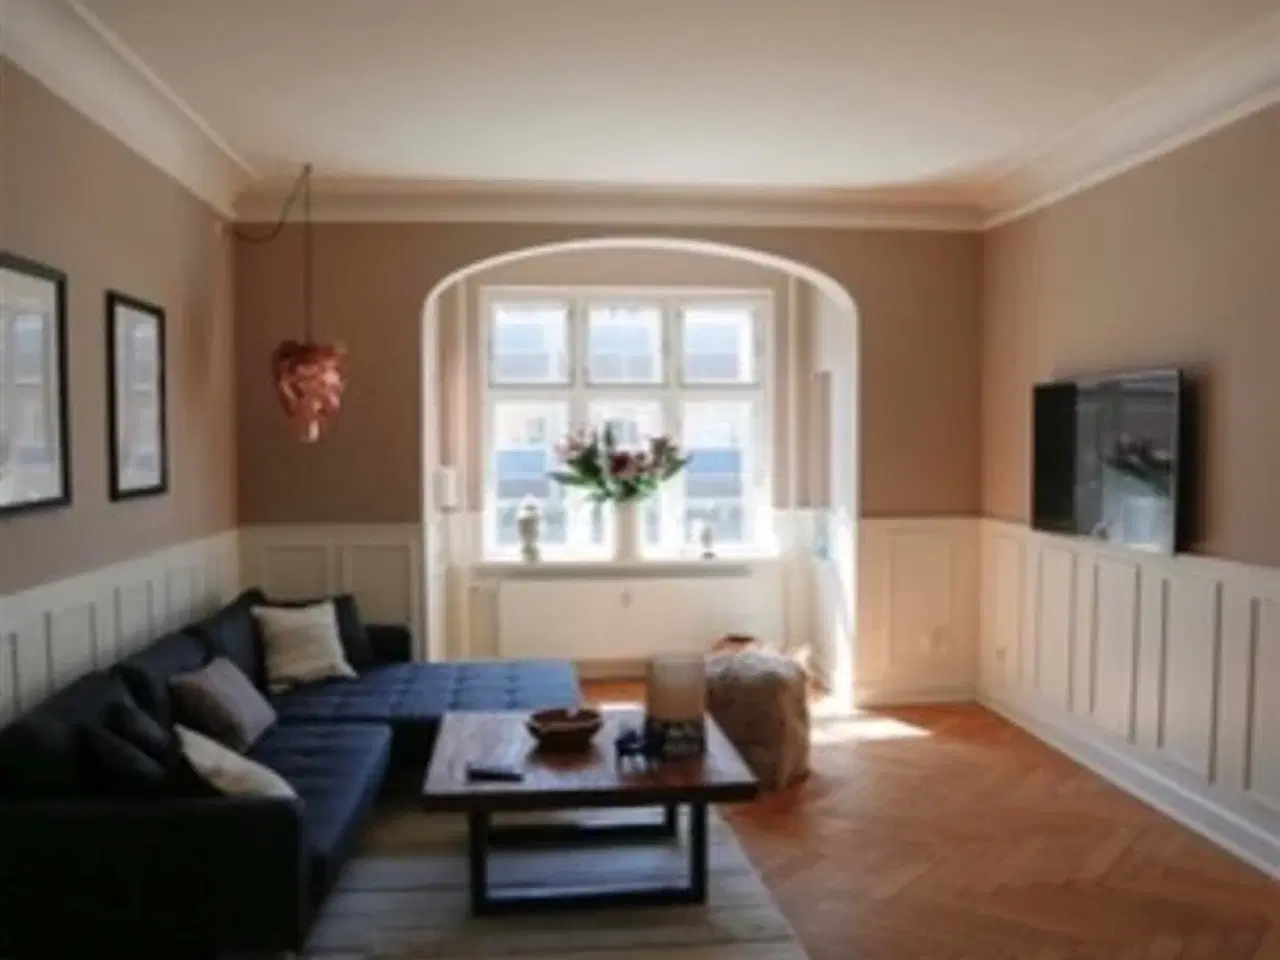 Billede 1 - Smuk og luksuriøst møbleret herskabslejlighed udlejes., Odense C, Fyn